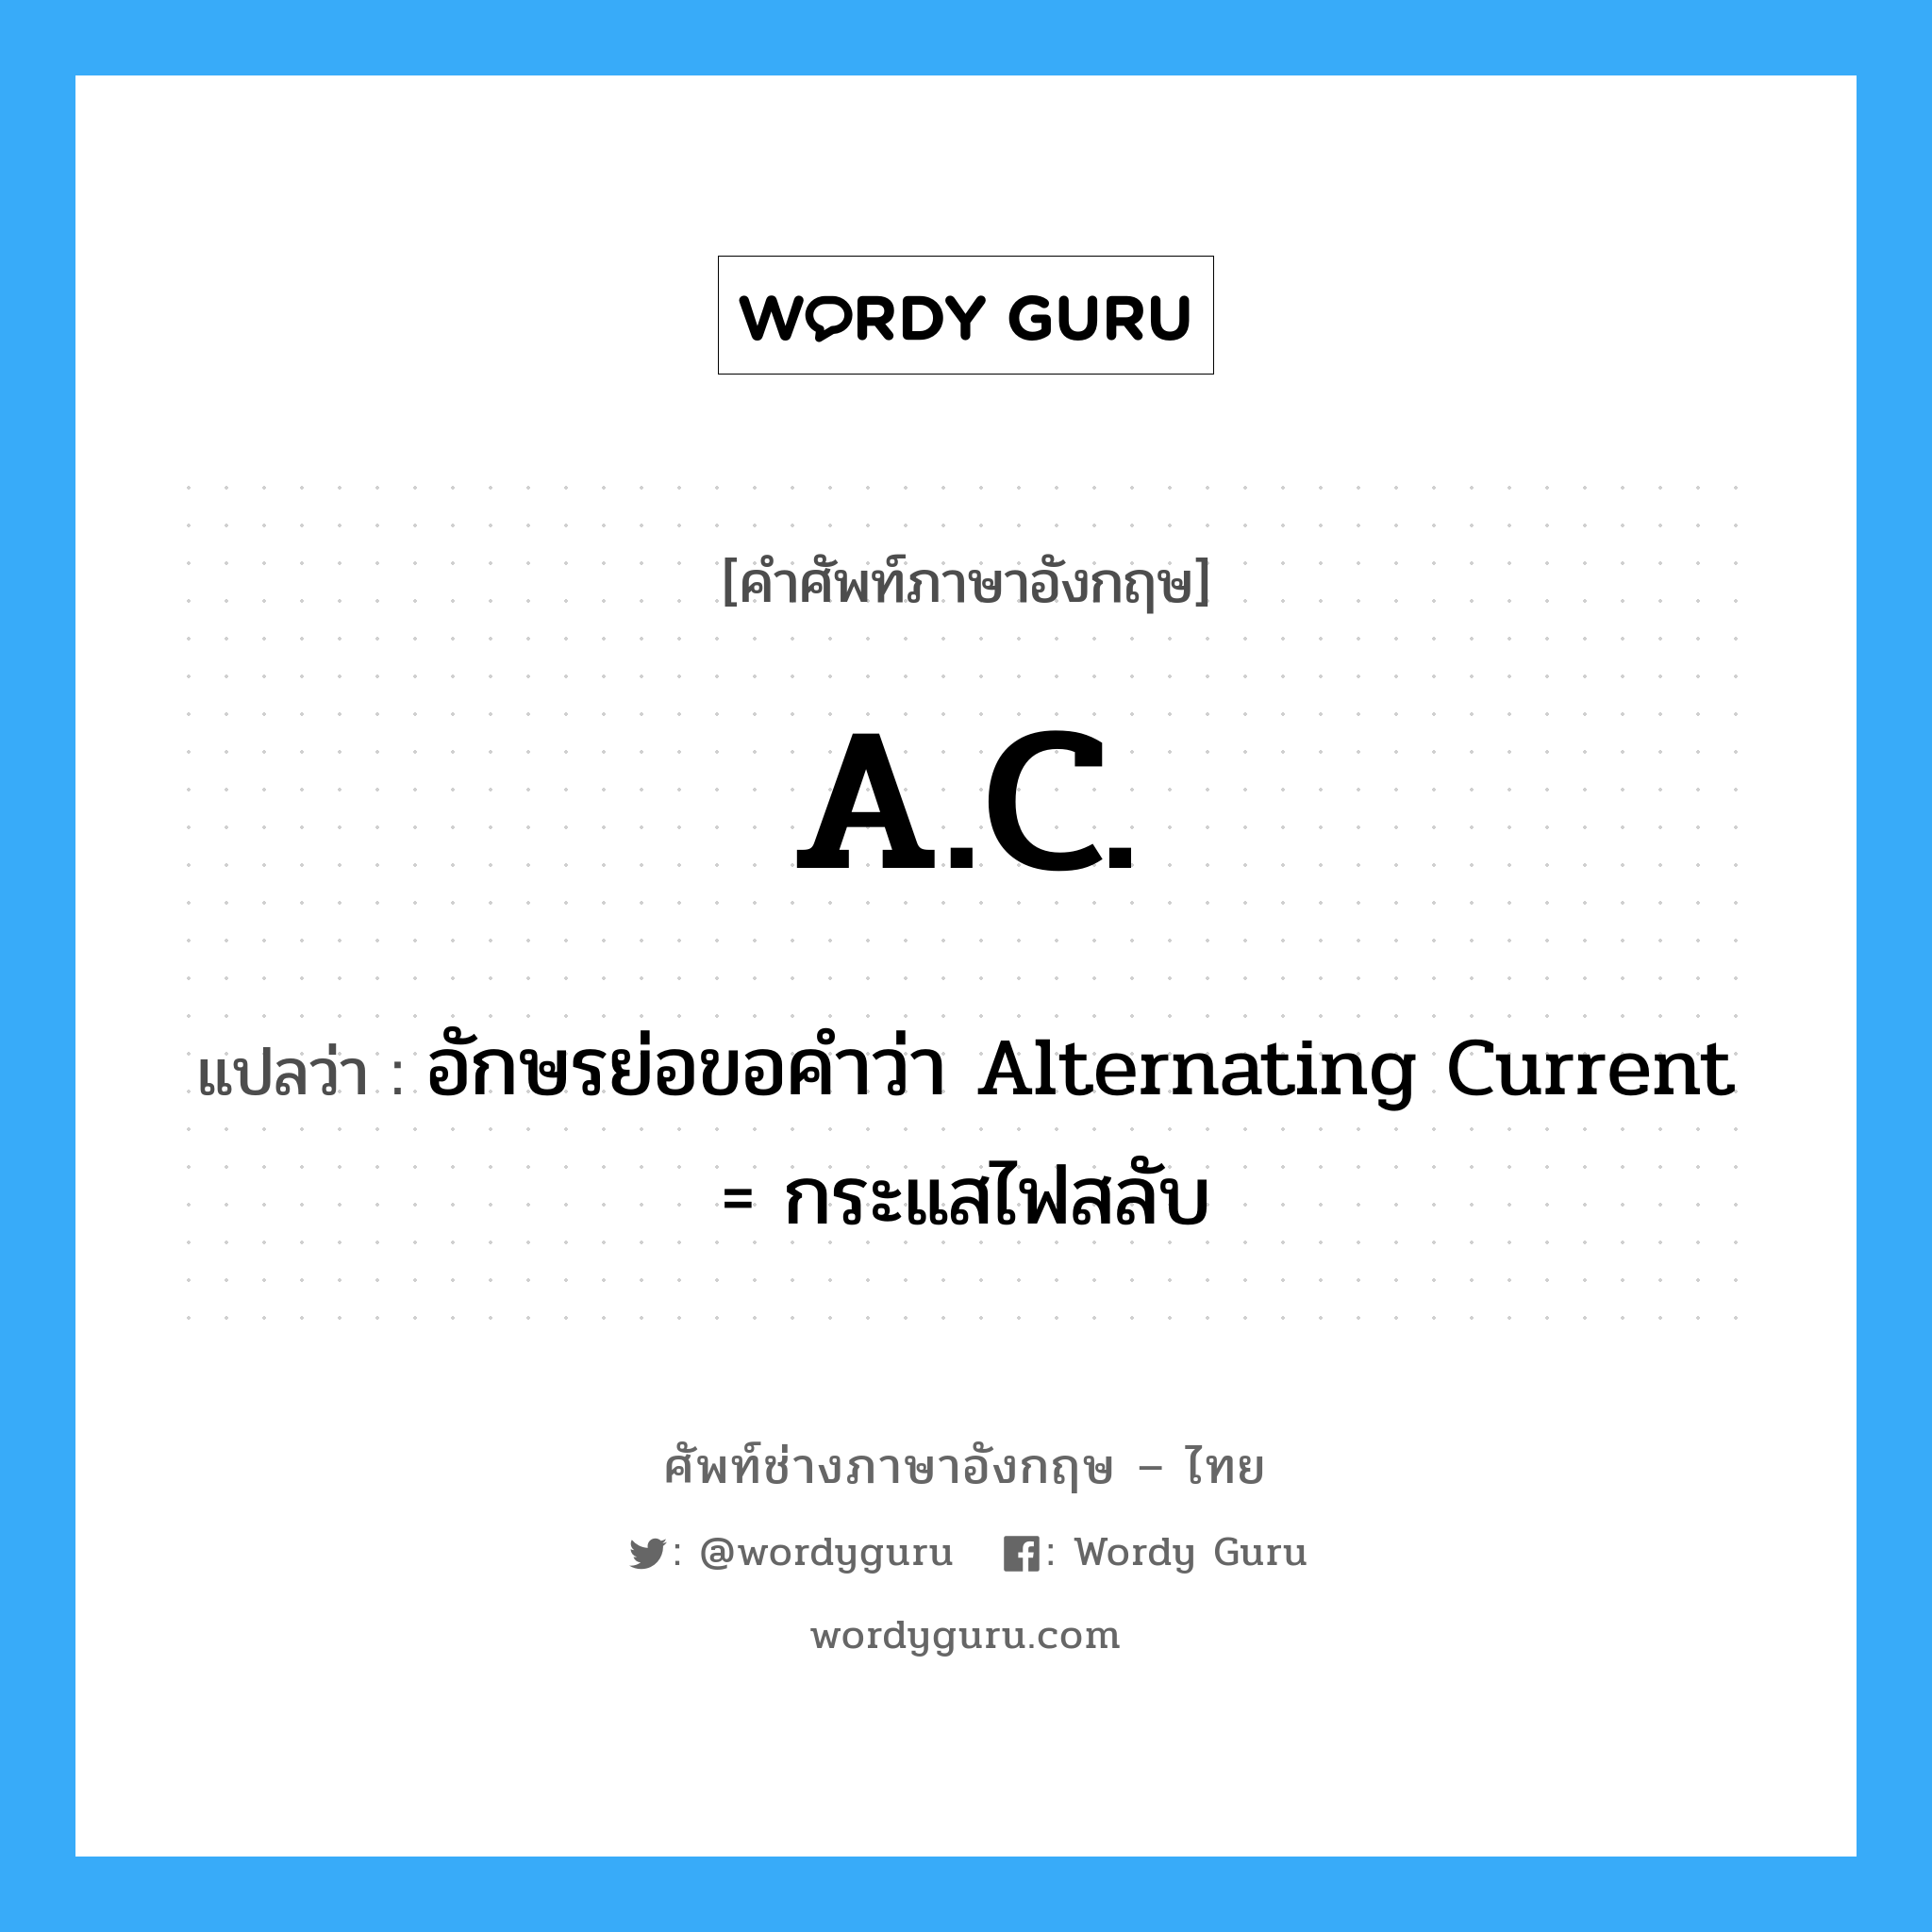 อักษรย่อขอคำว่า Alternating Current = กระแสไฟสลับ ภาษาอังกฤษ?, คำศัพท์ช่างภาษาอังกฤษ - ไทย อักษรย่อขอคำว่า Alternating Current = กระแสไฟสลับ คำศัพท์ภาษาอังกฤษ อักษรย่อขอคำว่า Alternating Current = กระแสไฟสลับ แปลว่า A.C.